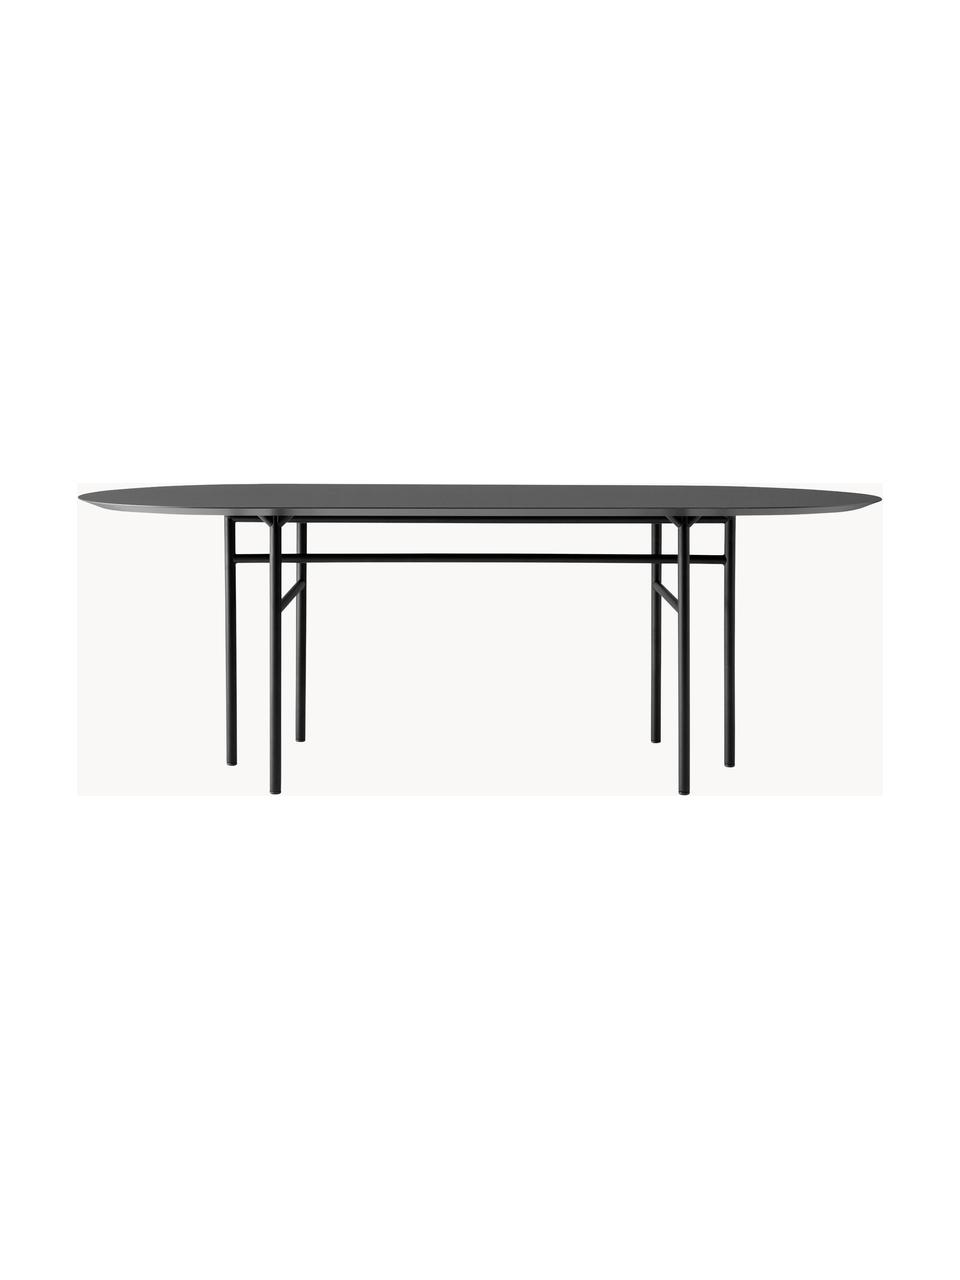 Oválný jídelní stůl Snaregade, 210 x 95 cm, Antracitová, černá matná, Š 210 cm, H 95 cm